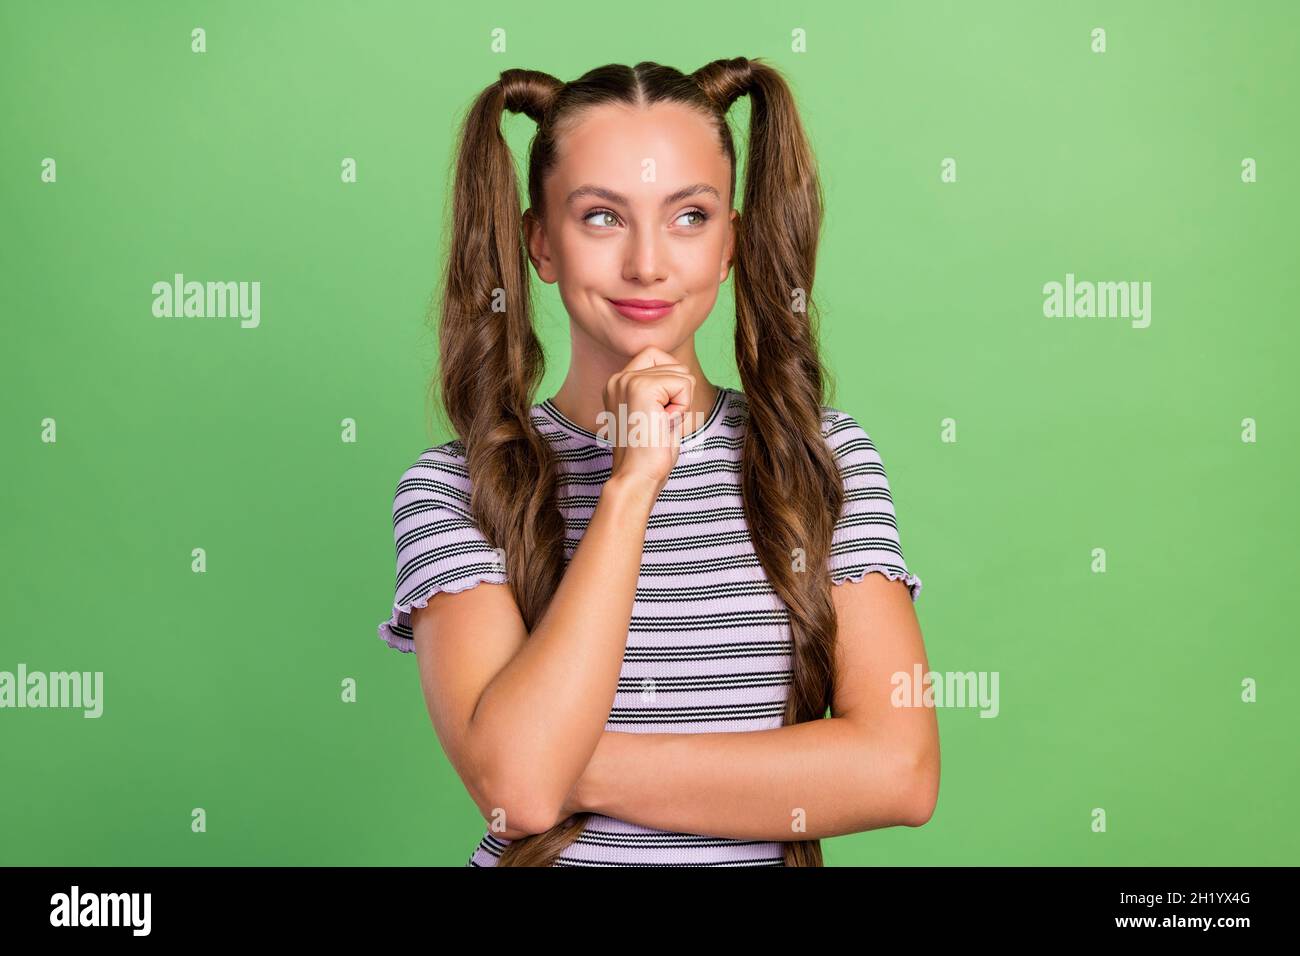 Ritratto di attraente allegro astuzia pensive ragazza dai capelli lunghi che prende la decisione isolato su sfondo verde di colore Foto Stock